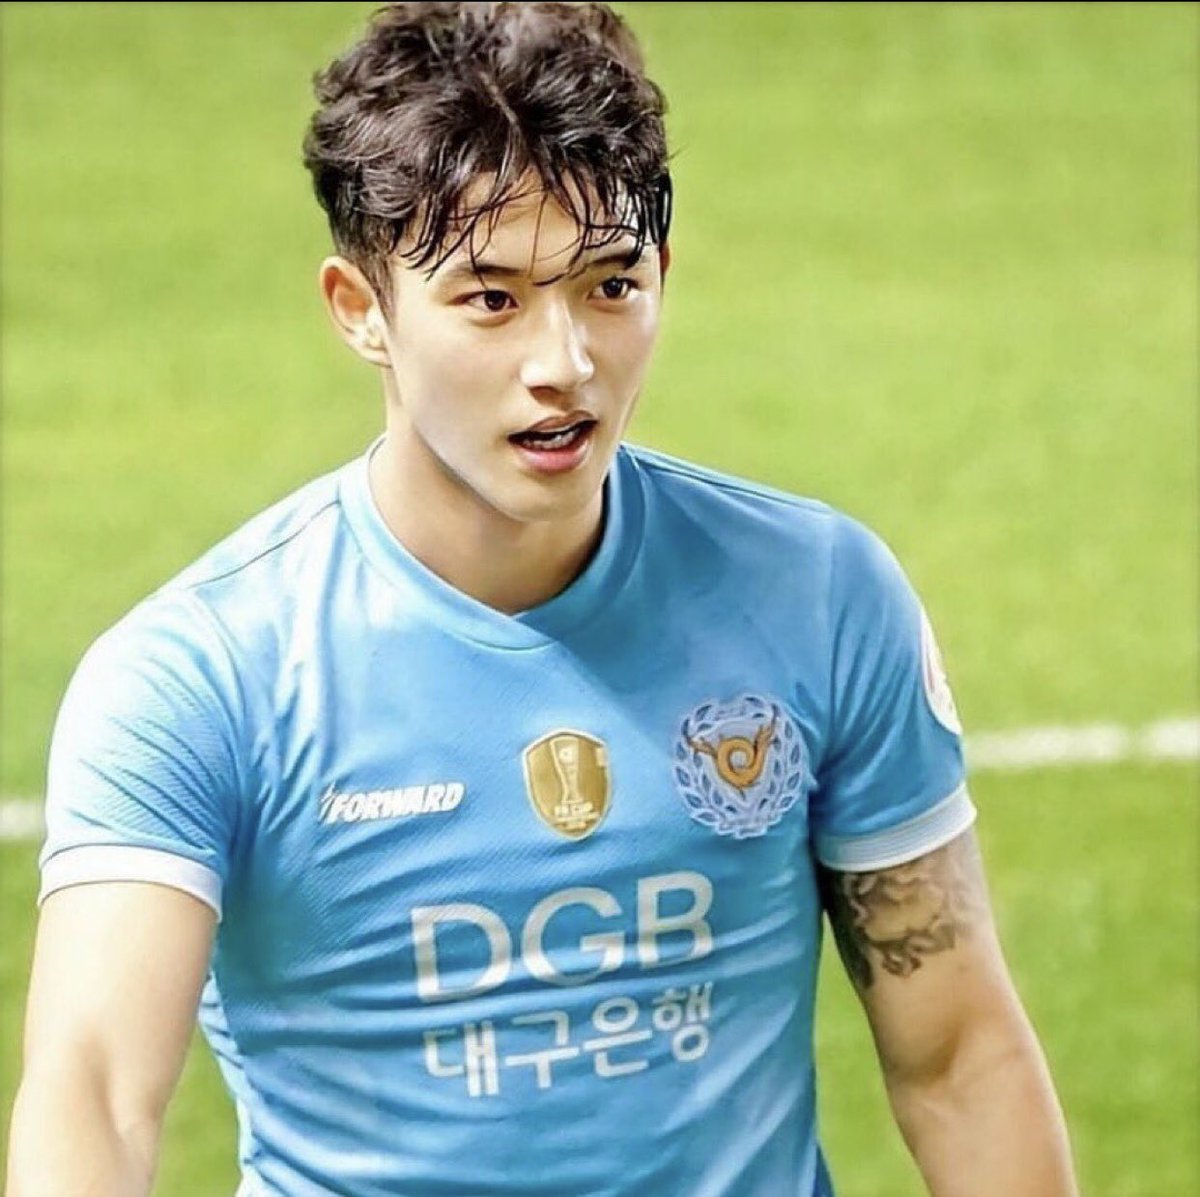 天は二物を与える 顔面優勝 韓国のサッカー選手チョン スンウォン コレクション Togetter